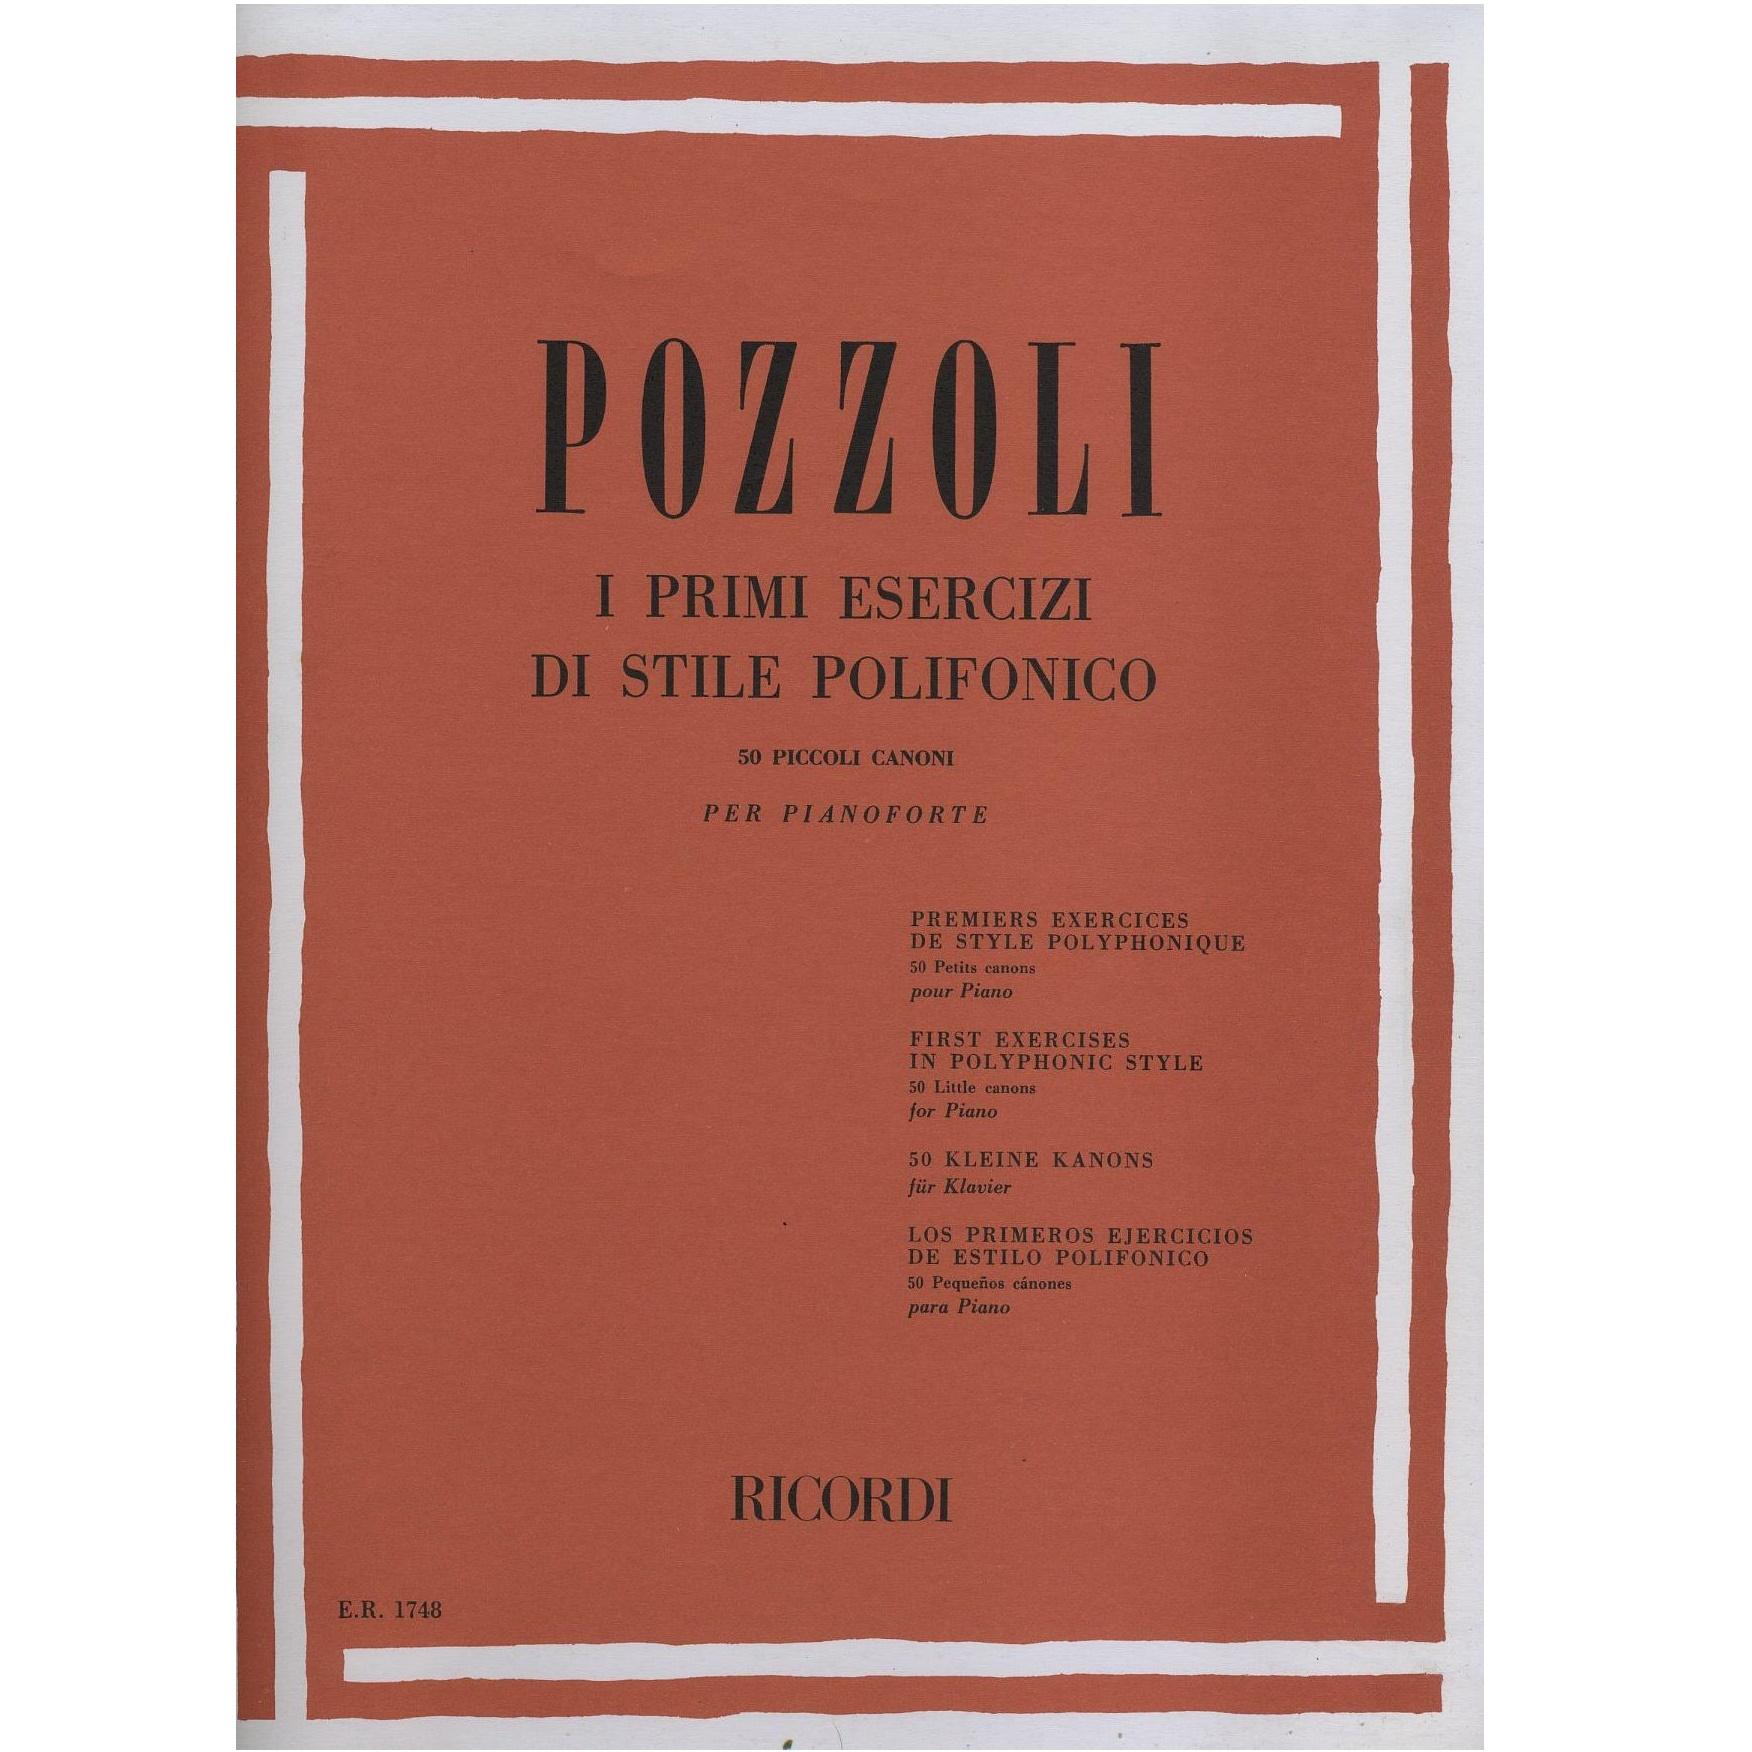 Pozzoli I primi esercizi di stile Polifonico 50 piccoli canoni per pianoforte - Ricordi